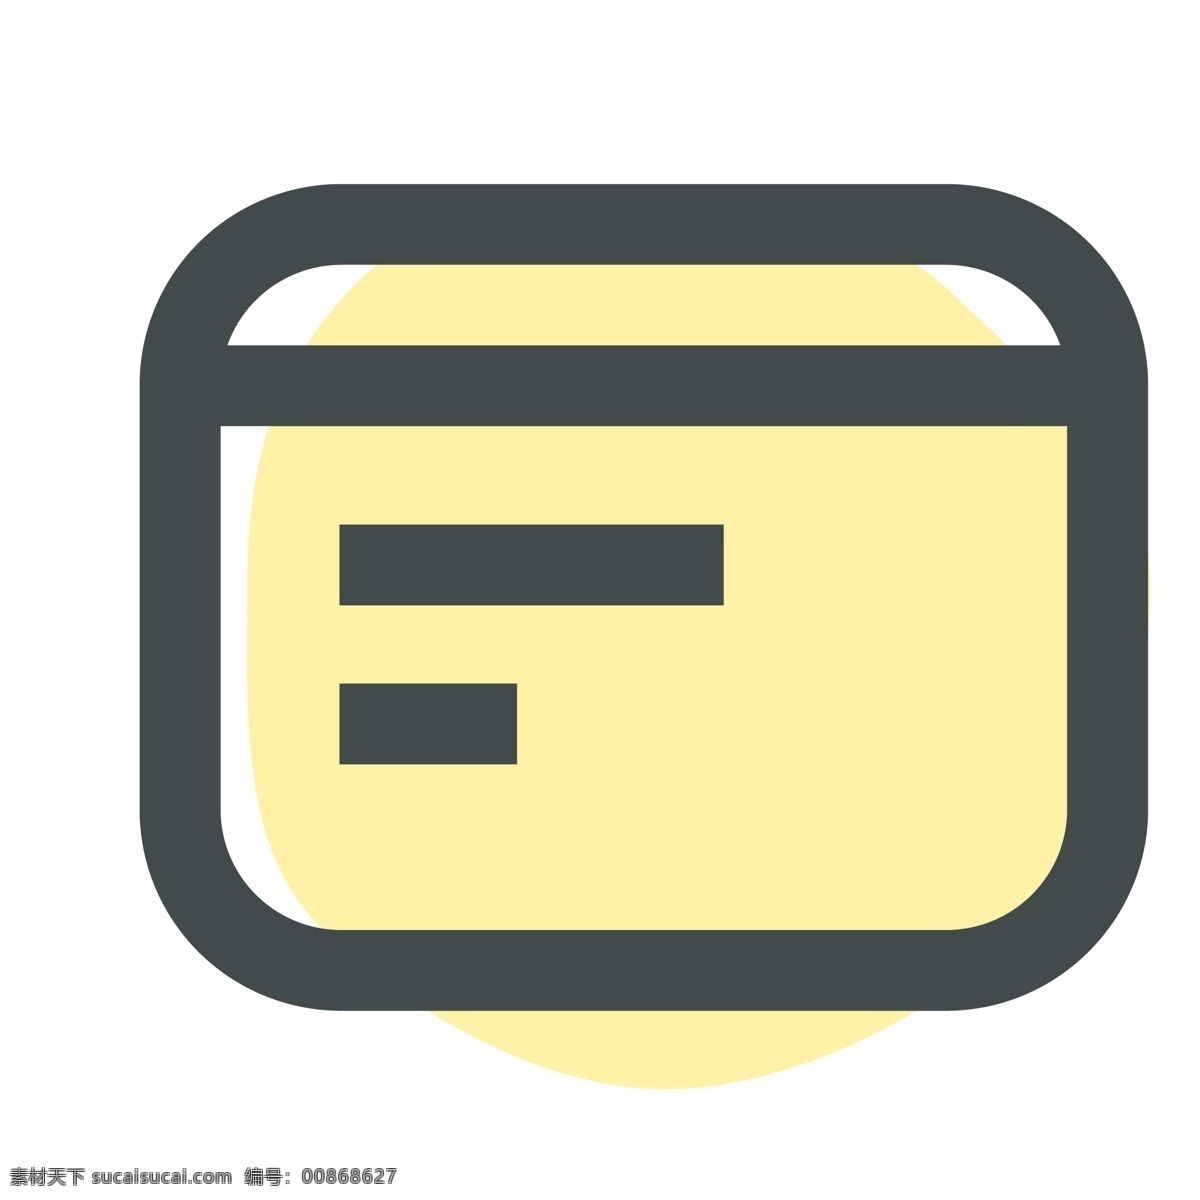 黄色 银行卡 图标 卡片 金融 手机图标 智能图标 教育图标 办公图标 网页图标 彩色图标